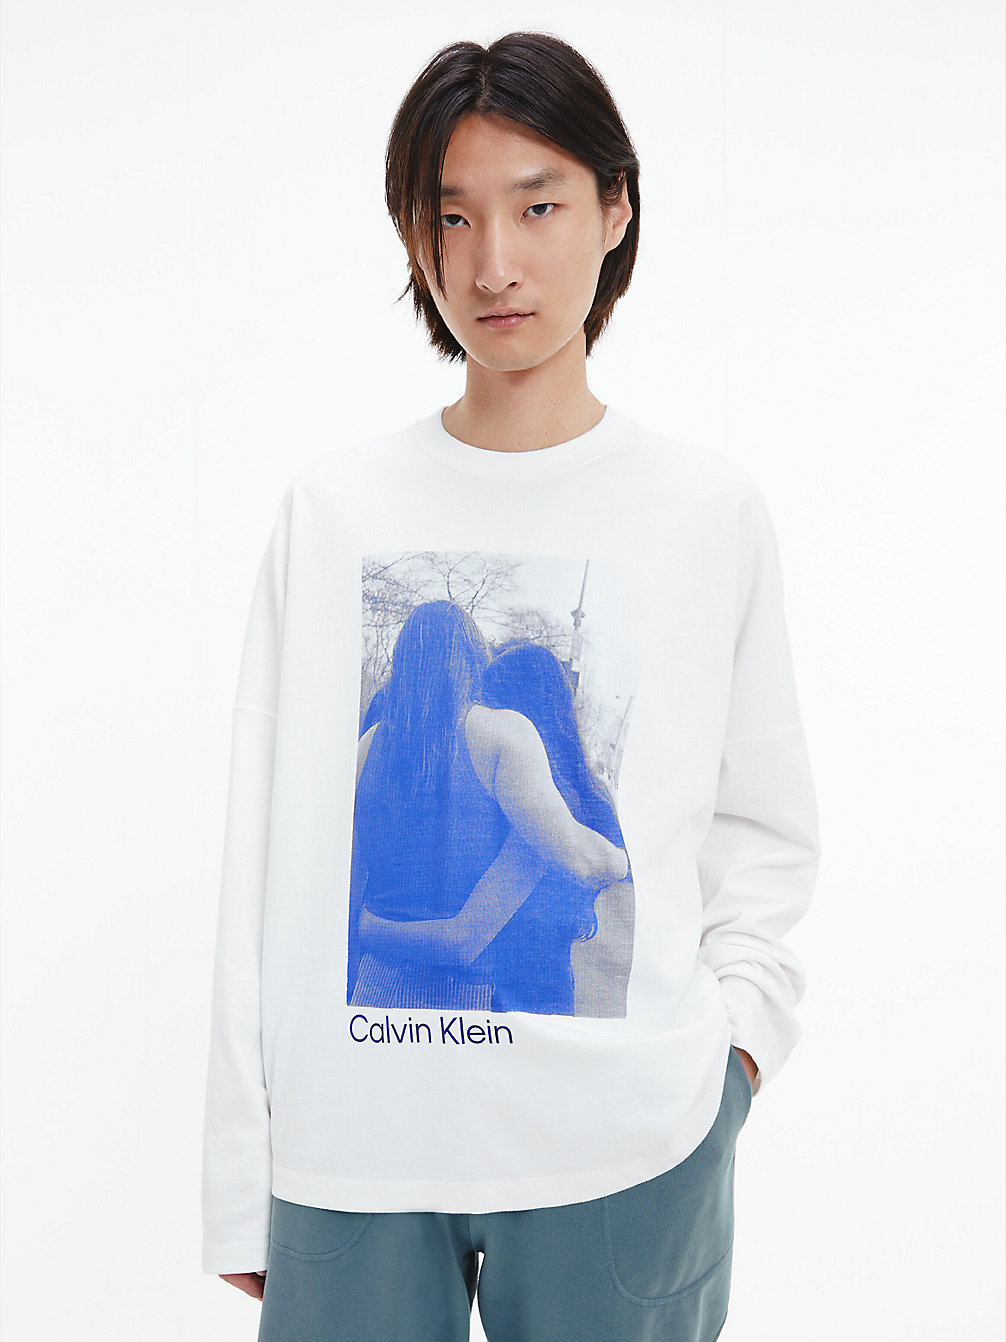 BRILLIANT WHITE T-Shirt Unisexe À Manches Longues Imprimé - CK Standards undefined unisex Calvin Klein